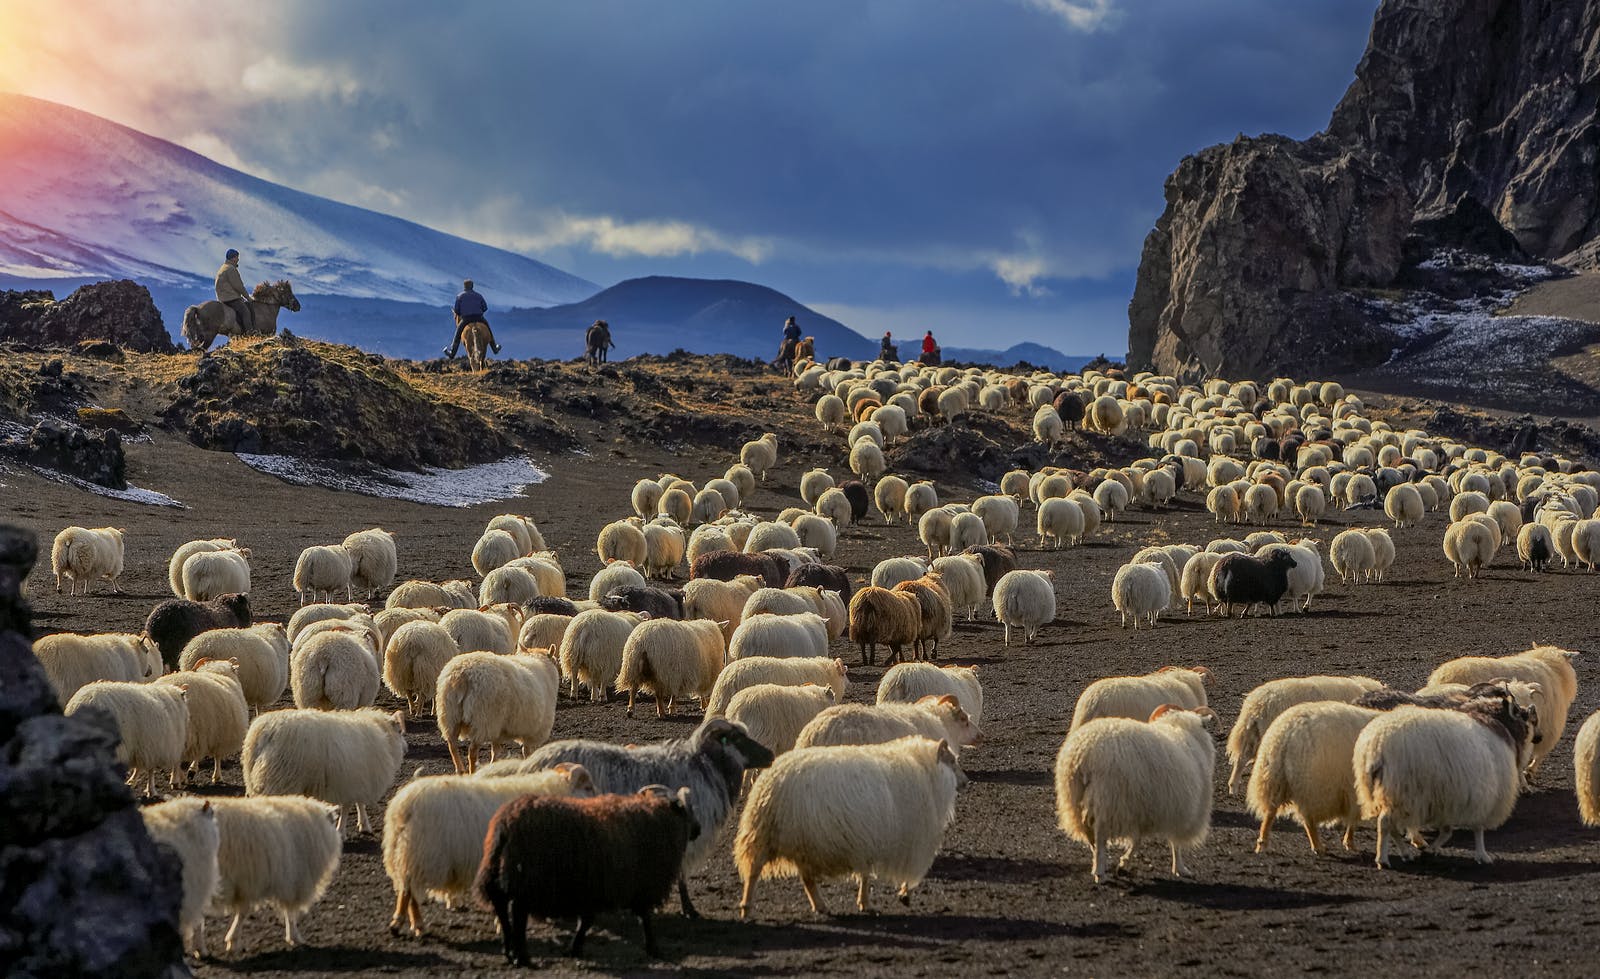 Men on horses herding sheep in Iceland